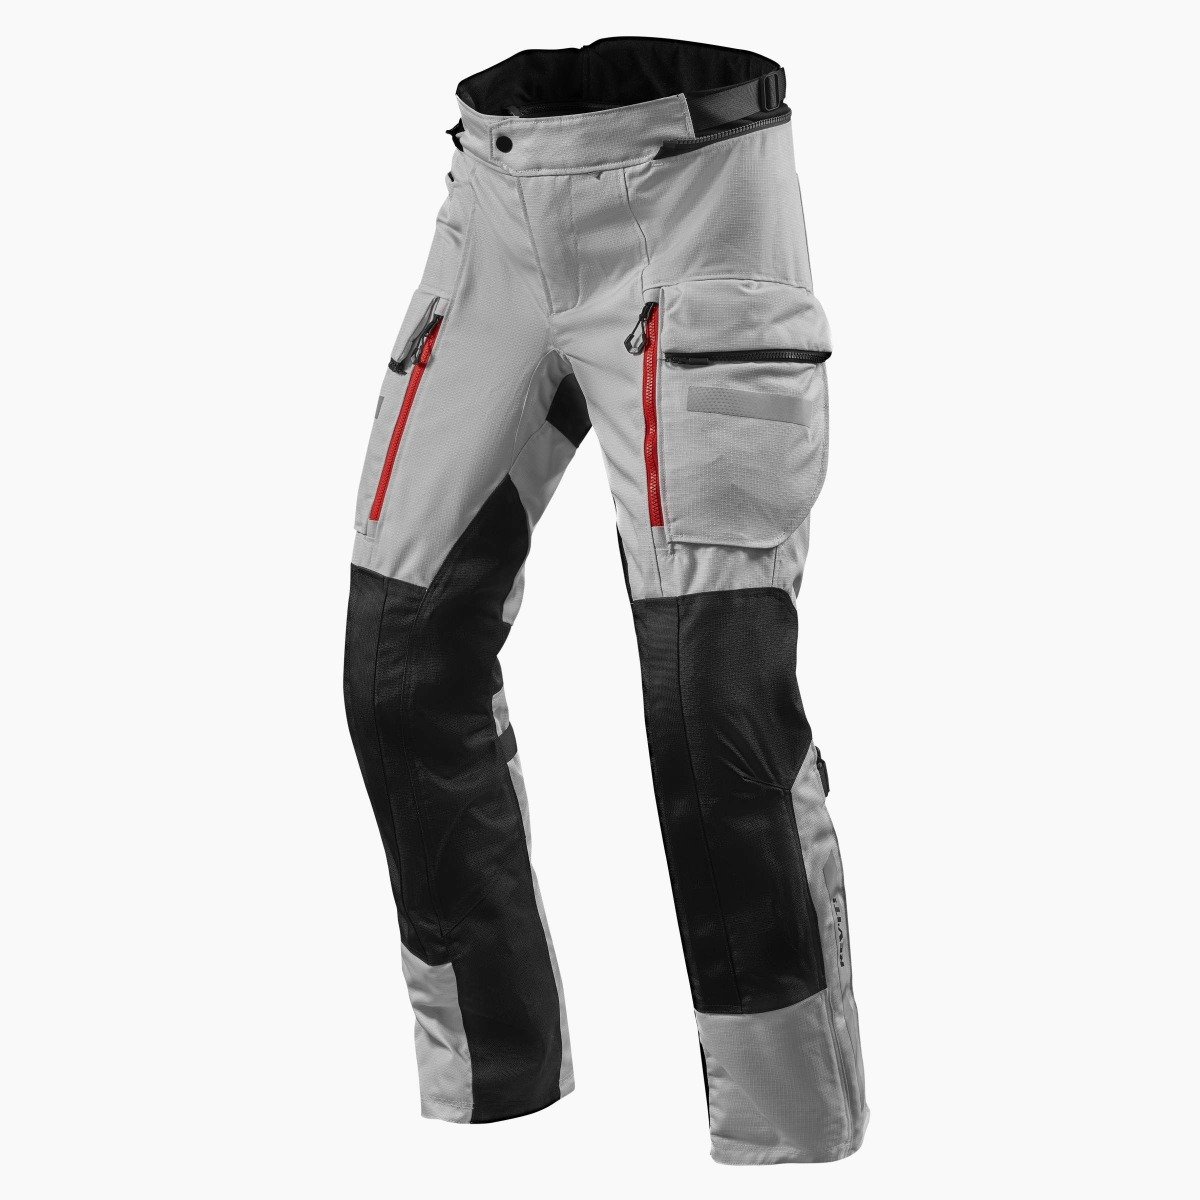 Image of REV'IT! Sand 4 H2O Standard Argent Noir Pantalon Taille 2XL